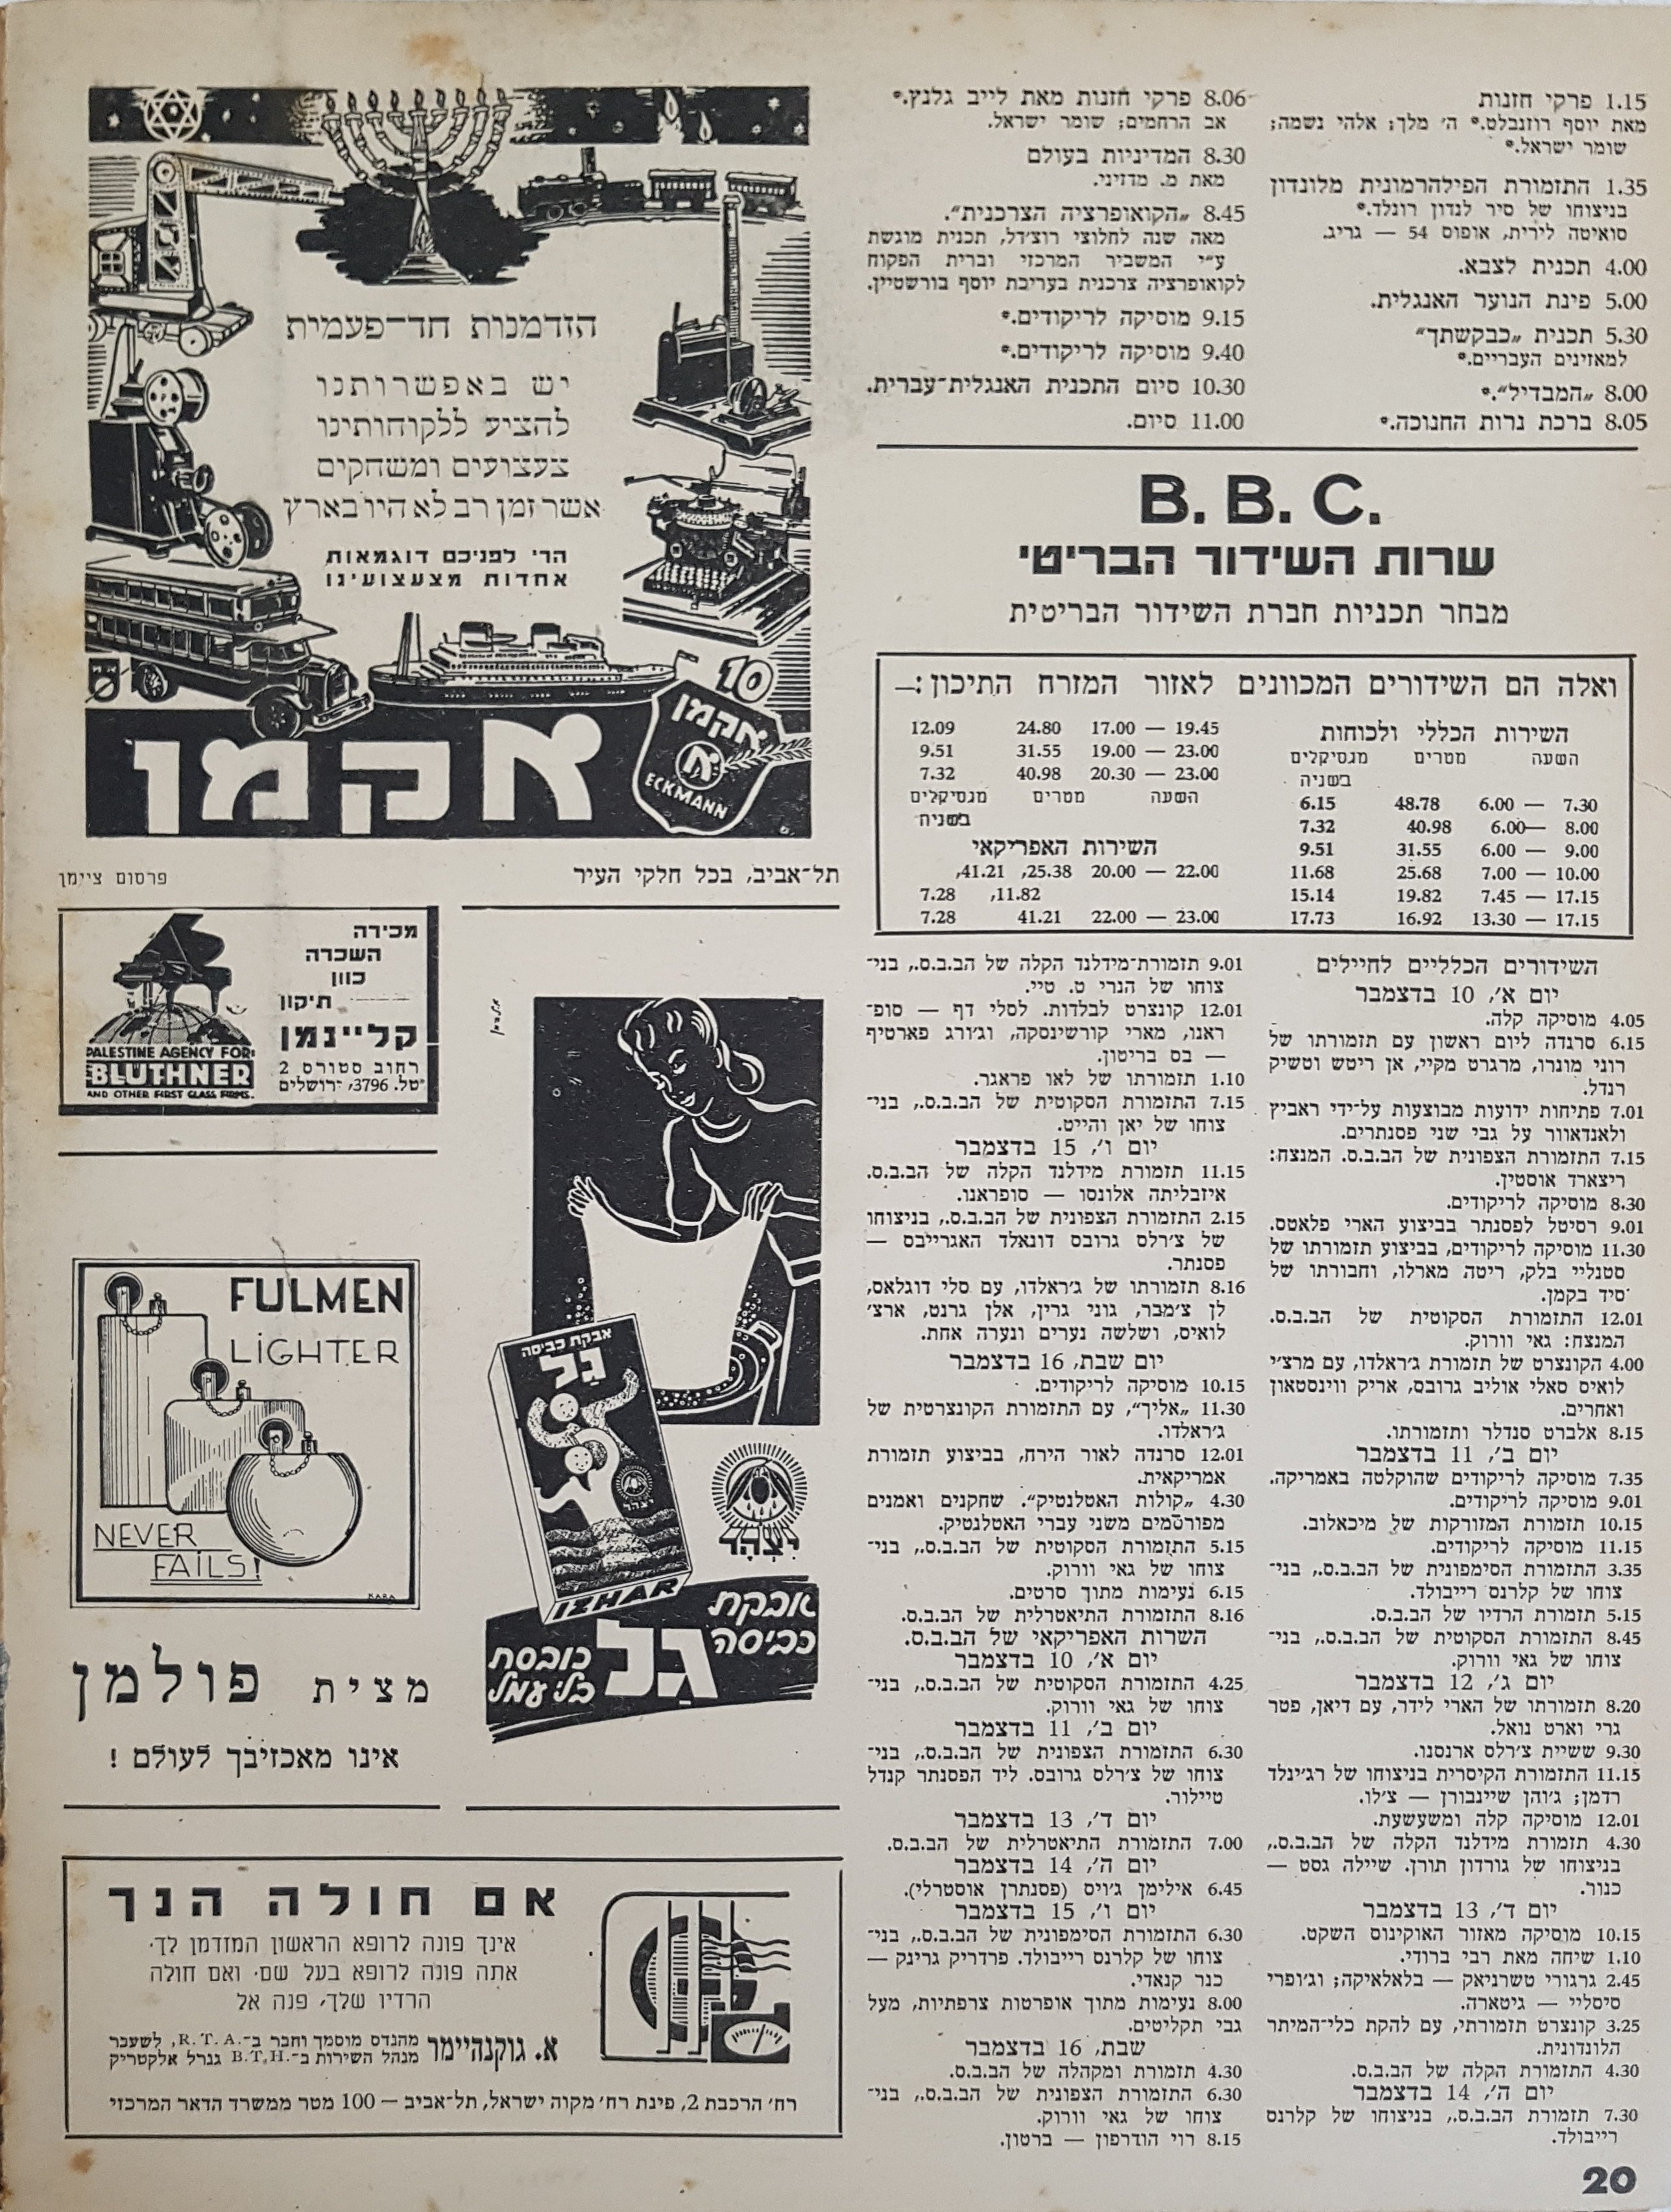 Radio Schedule: December 16, 1944